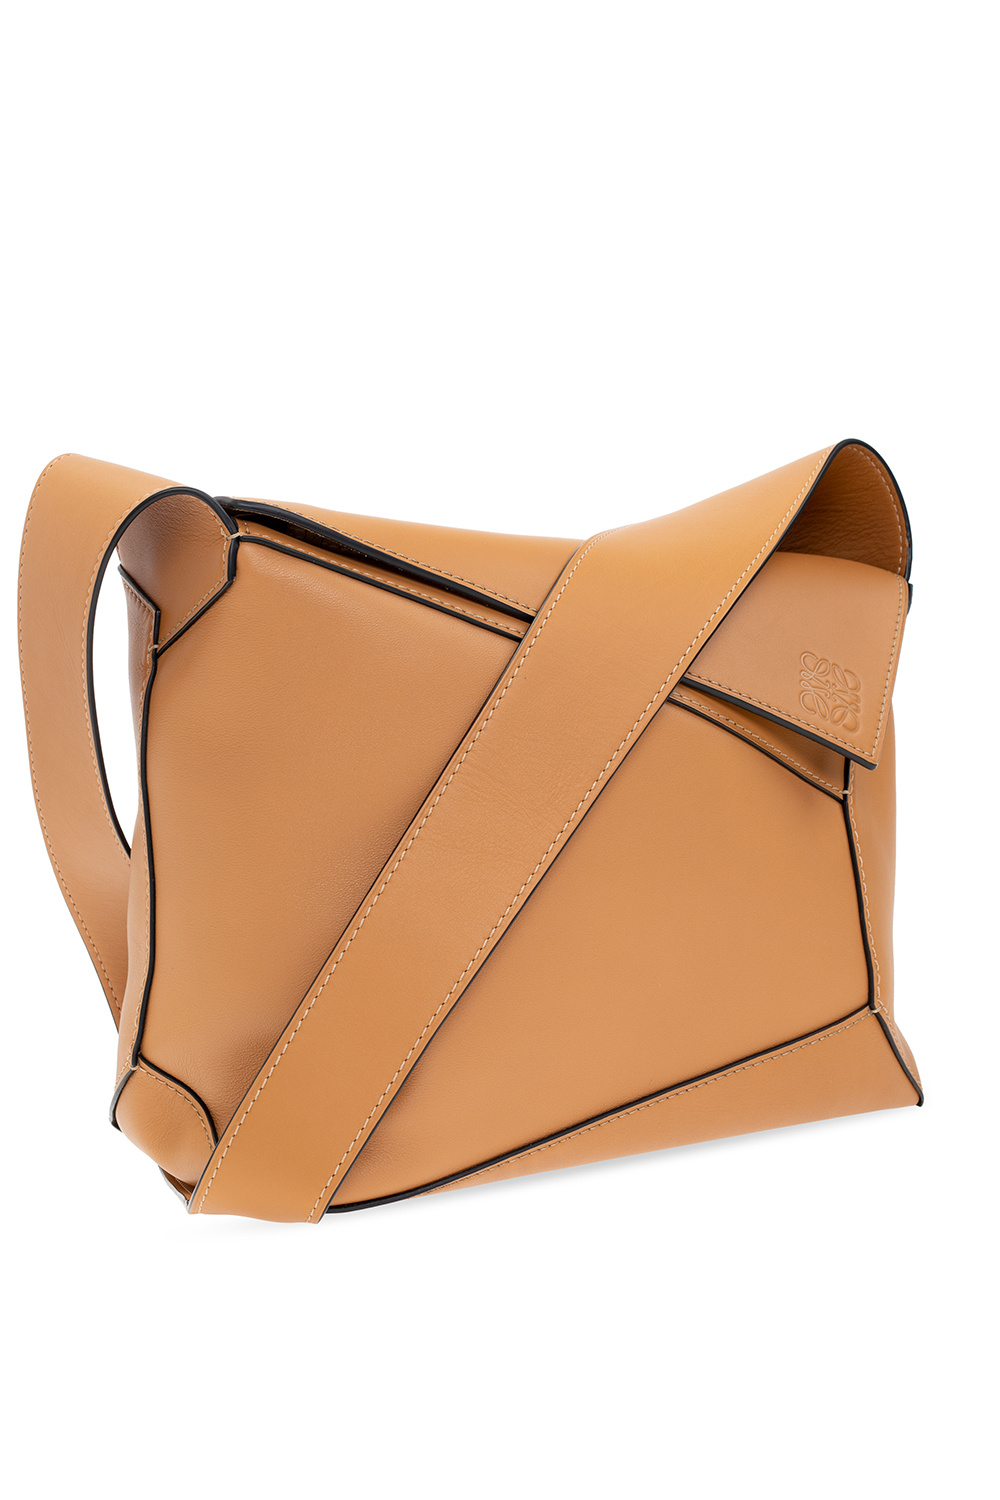 Loewe ‘Puzzle’ shoulder bag